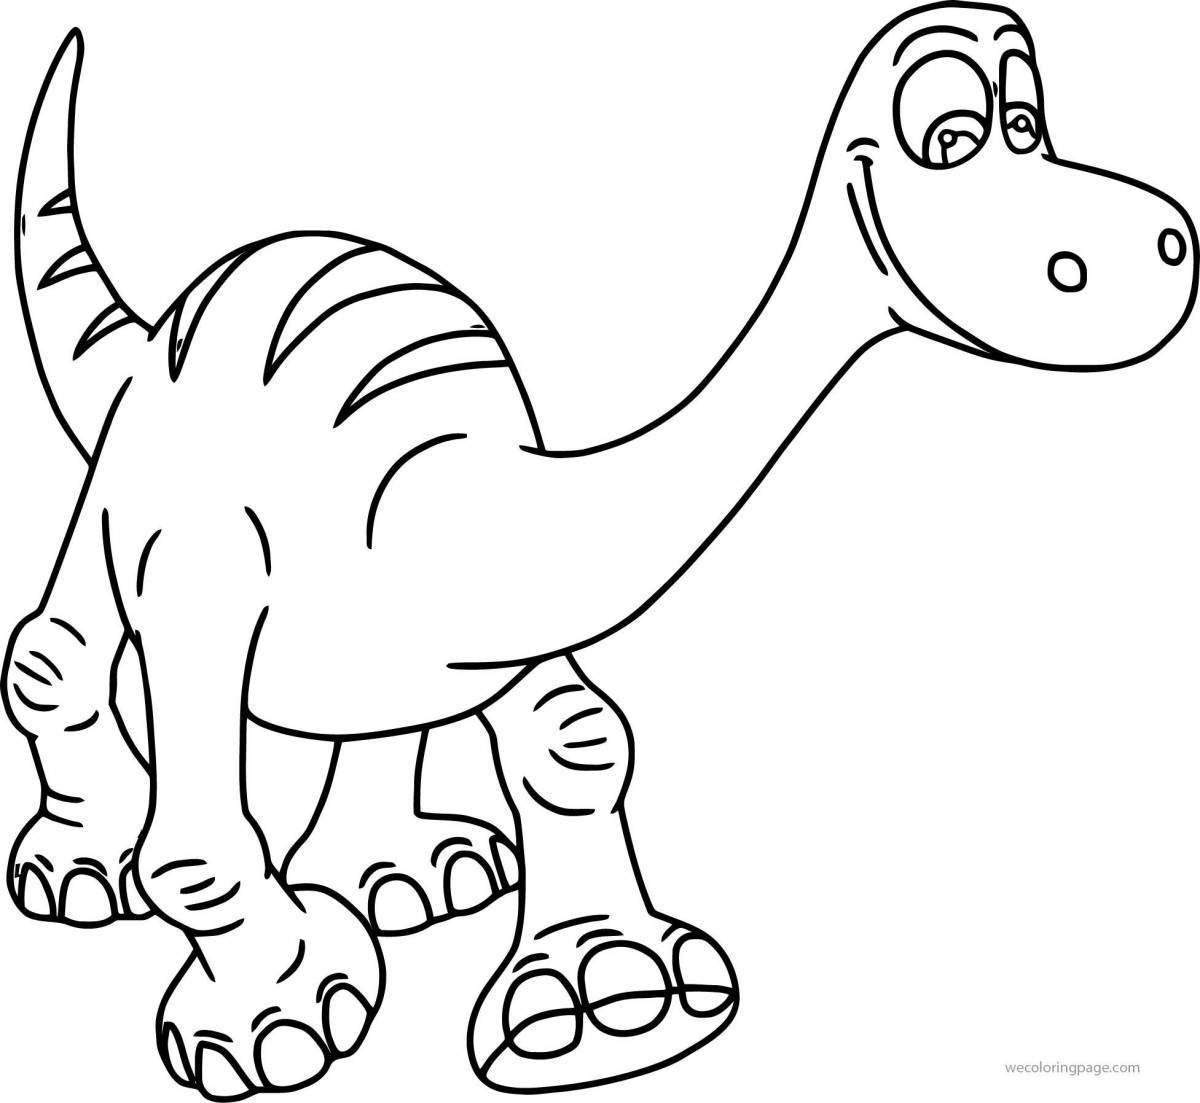 Цветная раскраска динозавров для детей 3-4 лет